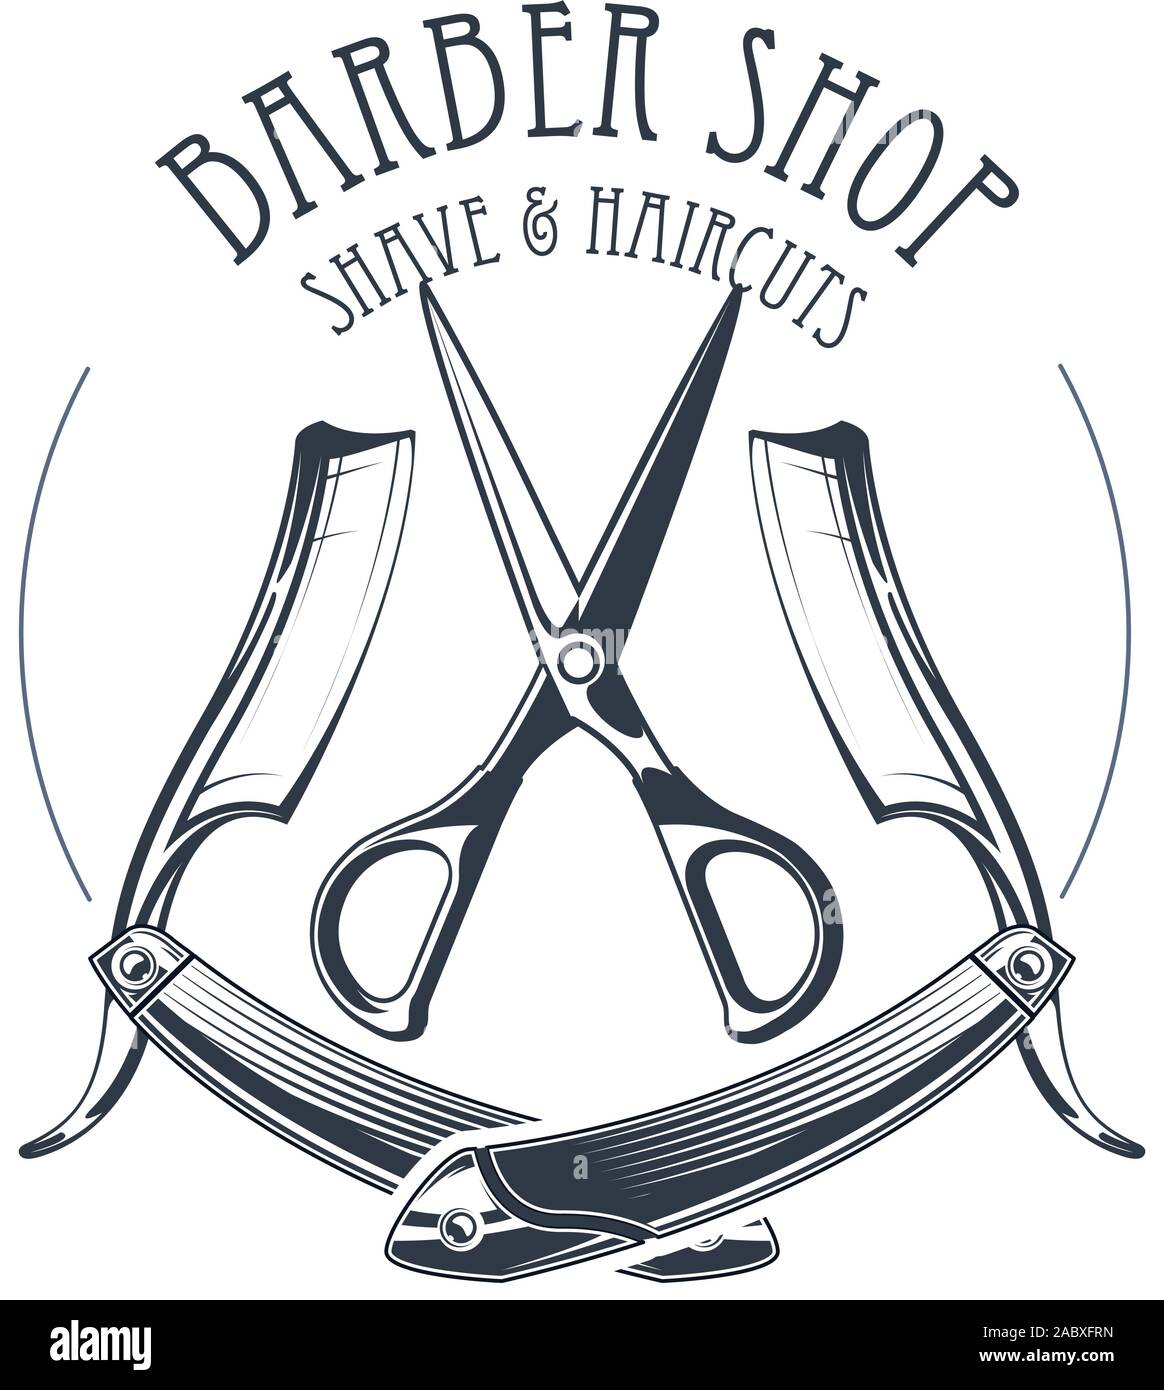 Vintage barbershop or hairdressing salon emblem, scissors and old straight razor, barber shop logo Stock Vector